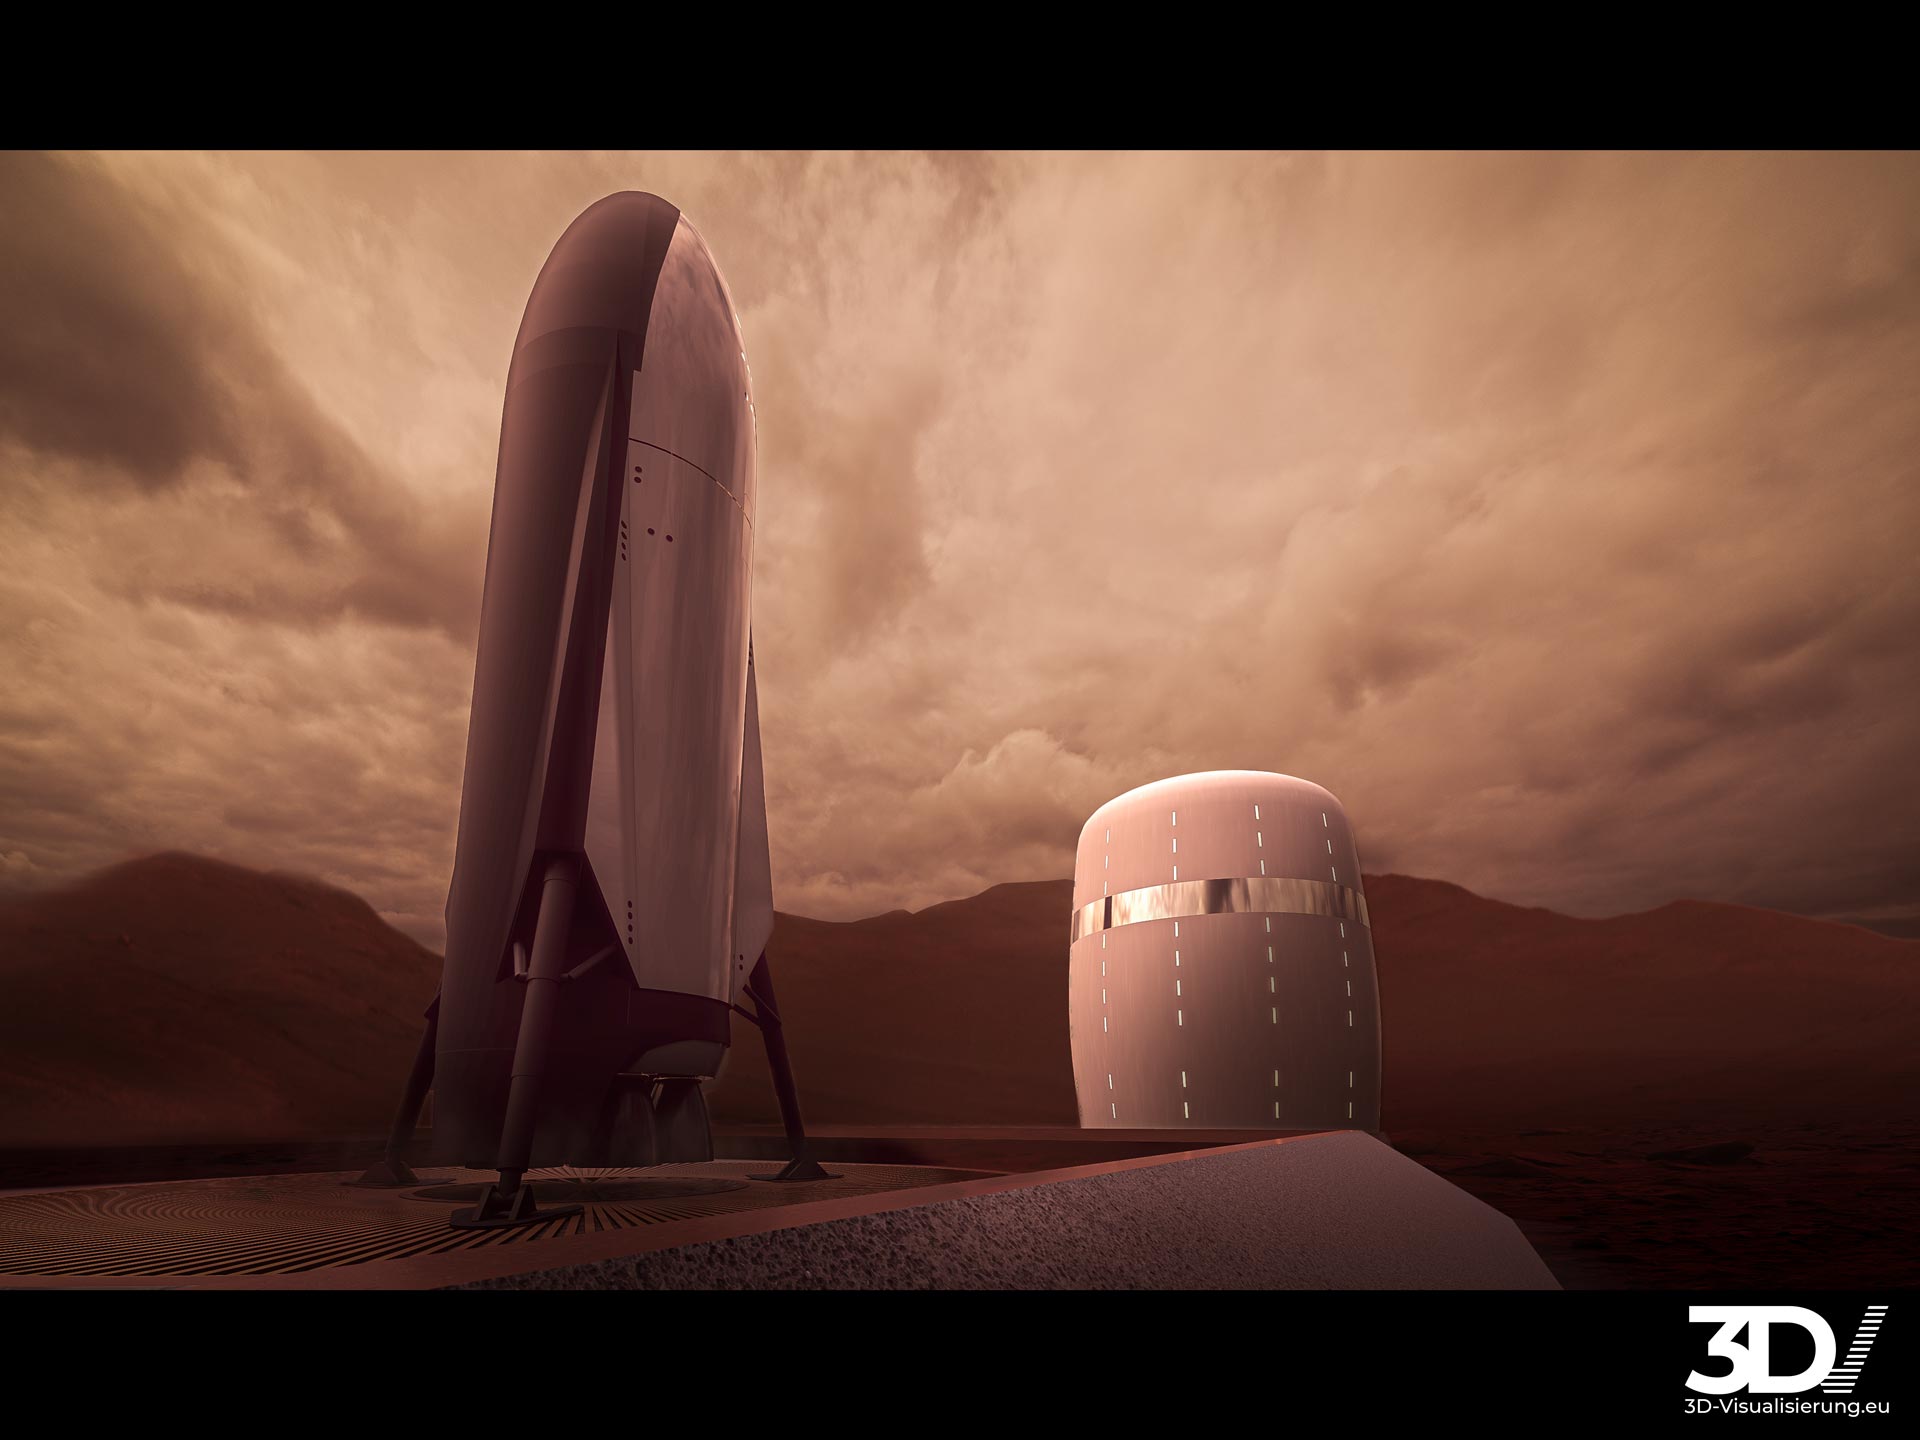 Architekturvisualisierung eines Habitats auf dem Mars 2030